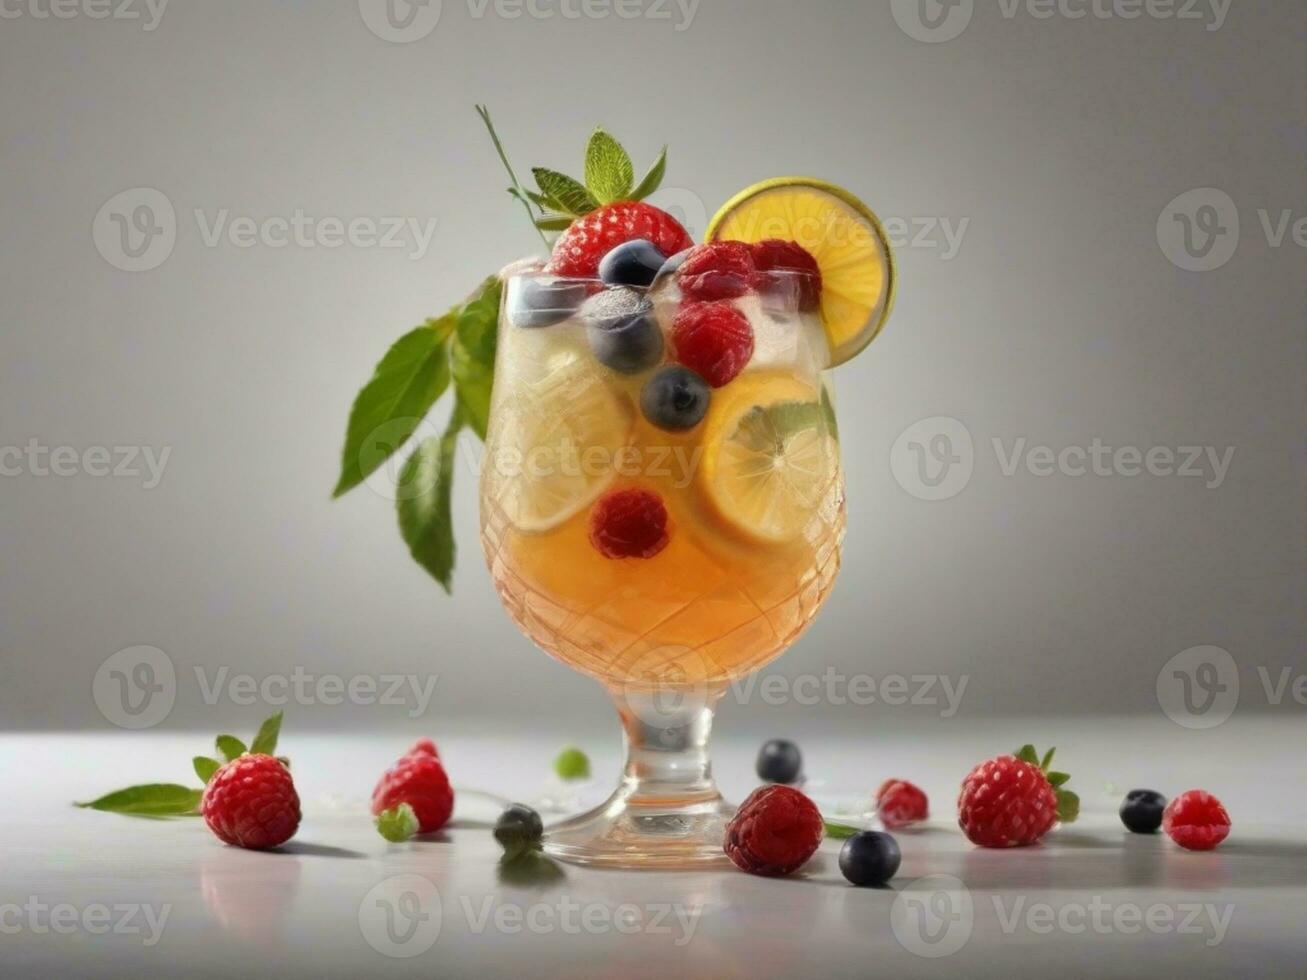 ai genererad glas av alkohol kall coctail dekorerad med is, frukt och mynta vistas på trä tabell. färsk juice på bakgrund med citron, jordgubbe, kalk. foto